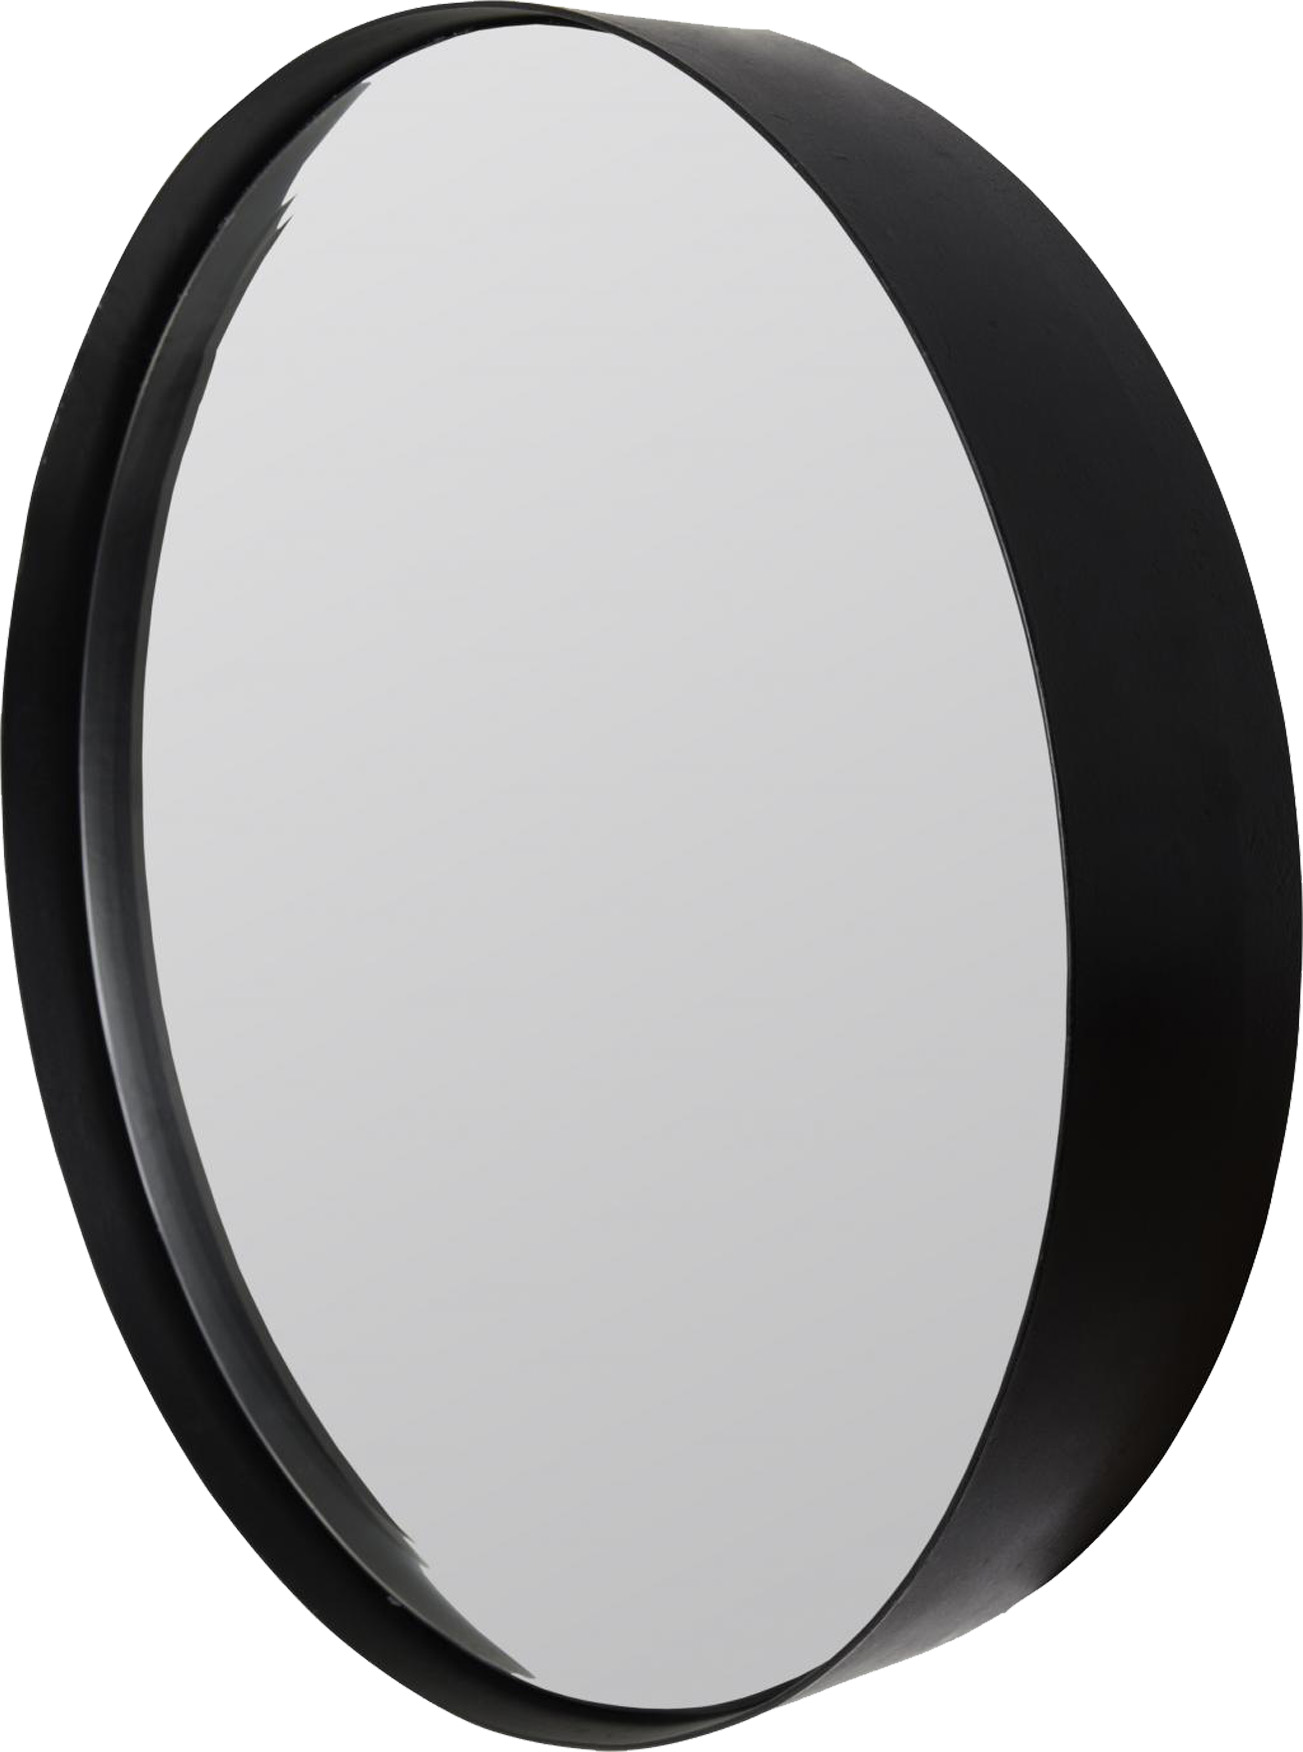 Spiegel ROUND XL | Stahl matt schwarz 3 mm | rund ca. 90 cm